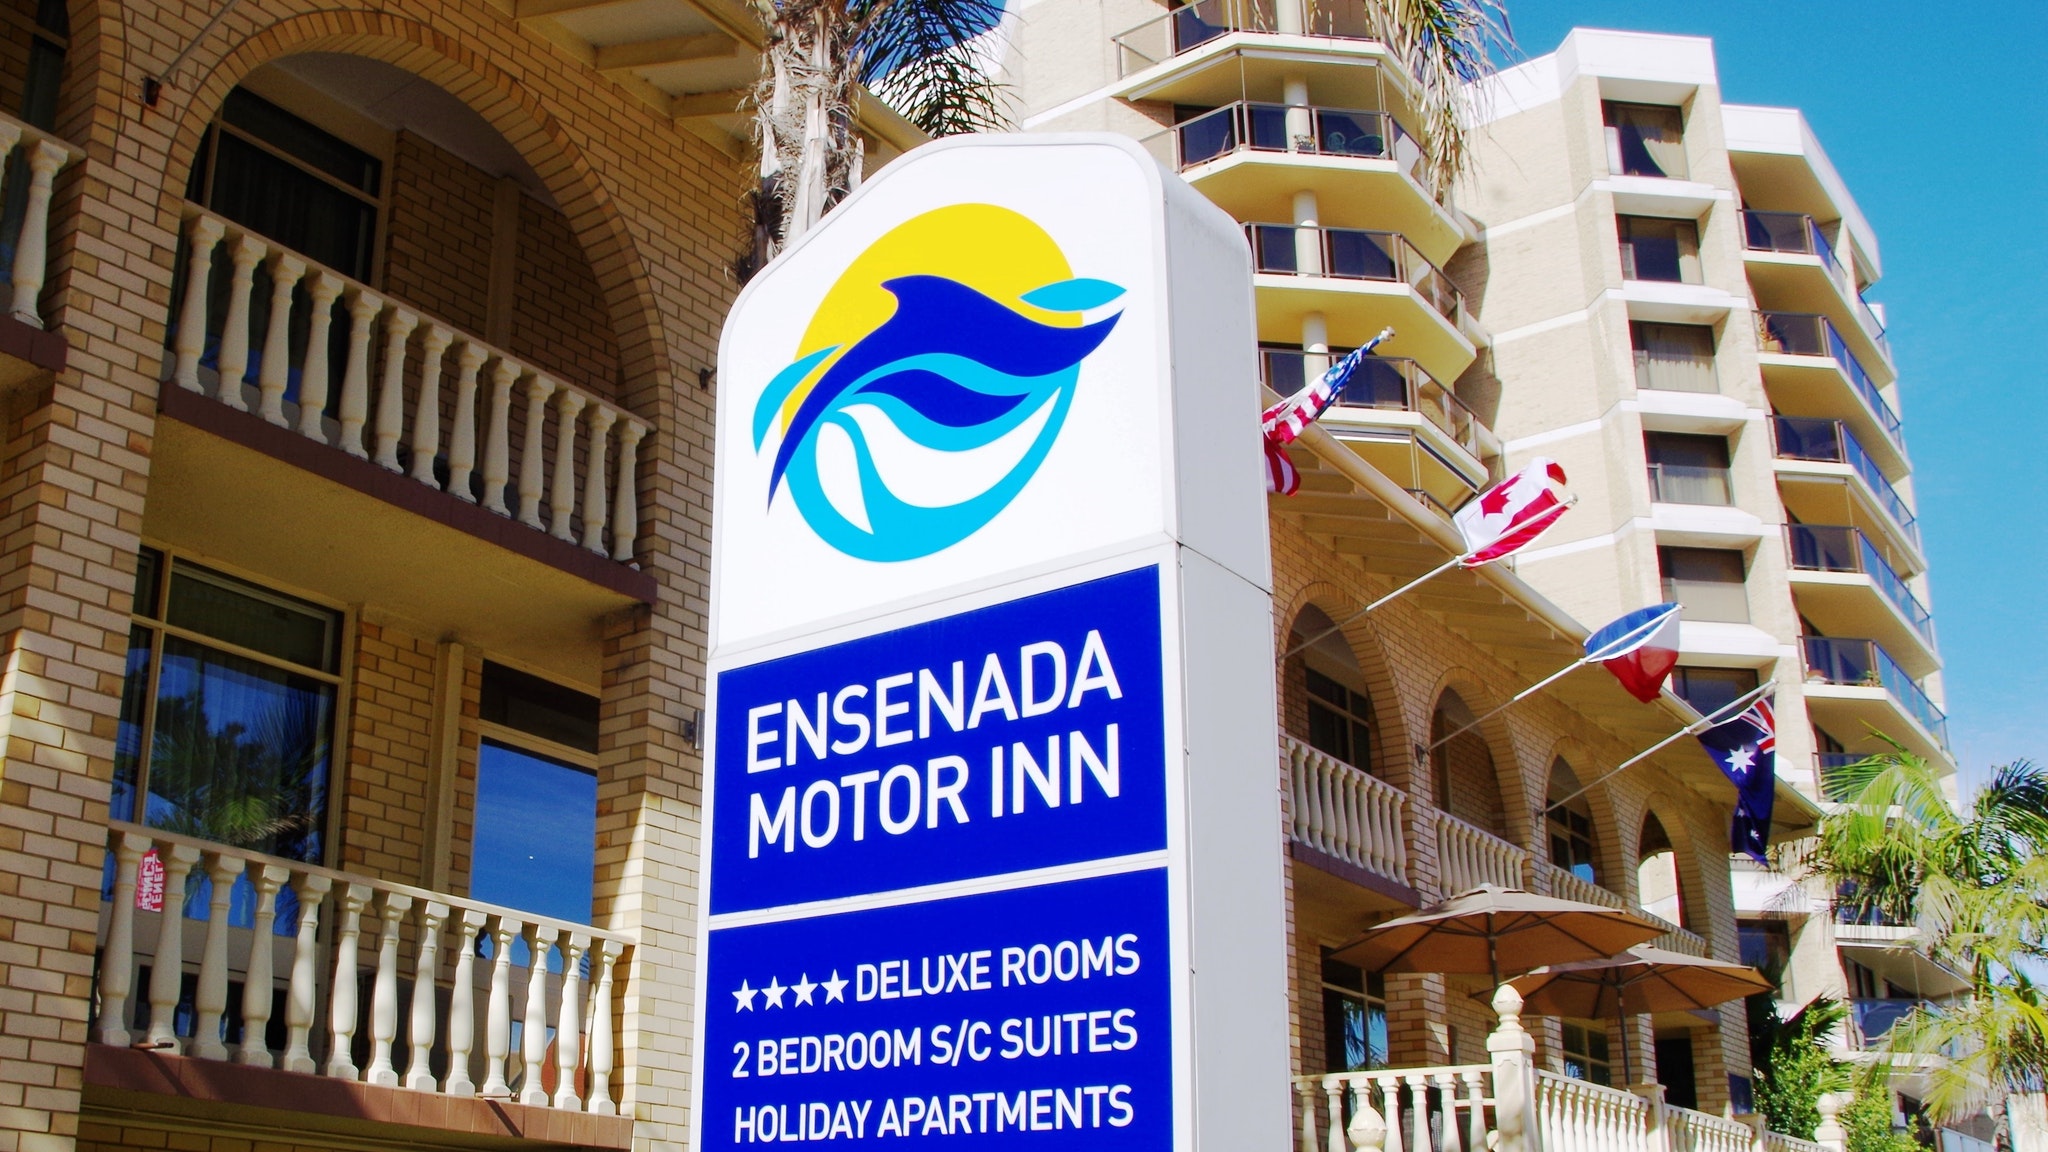 Ensenada Motor Inn And Suites - Accommodation Mt Buller 10